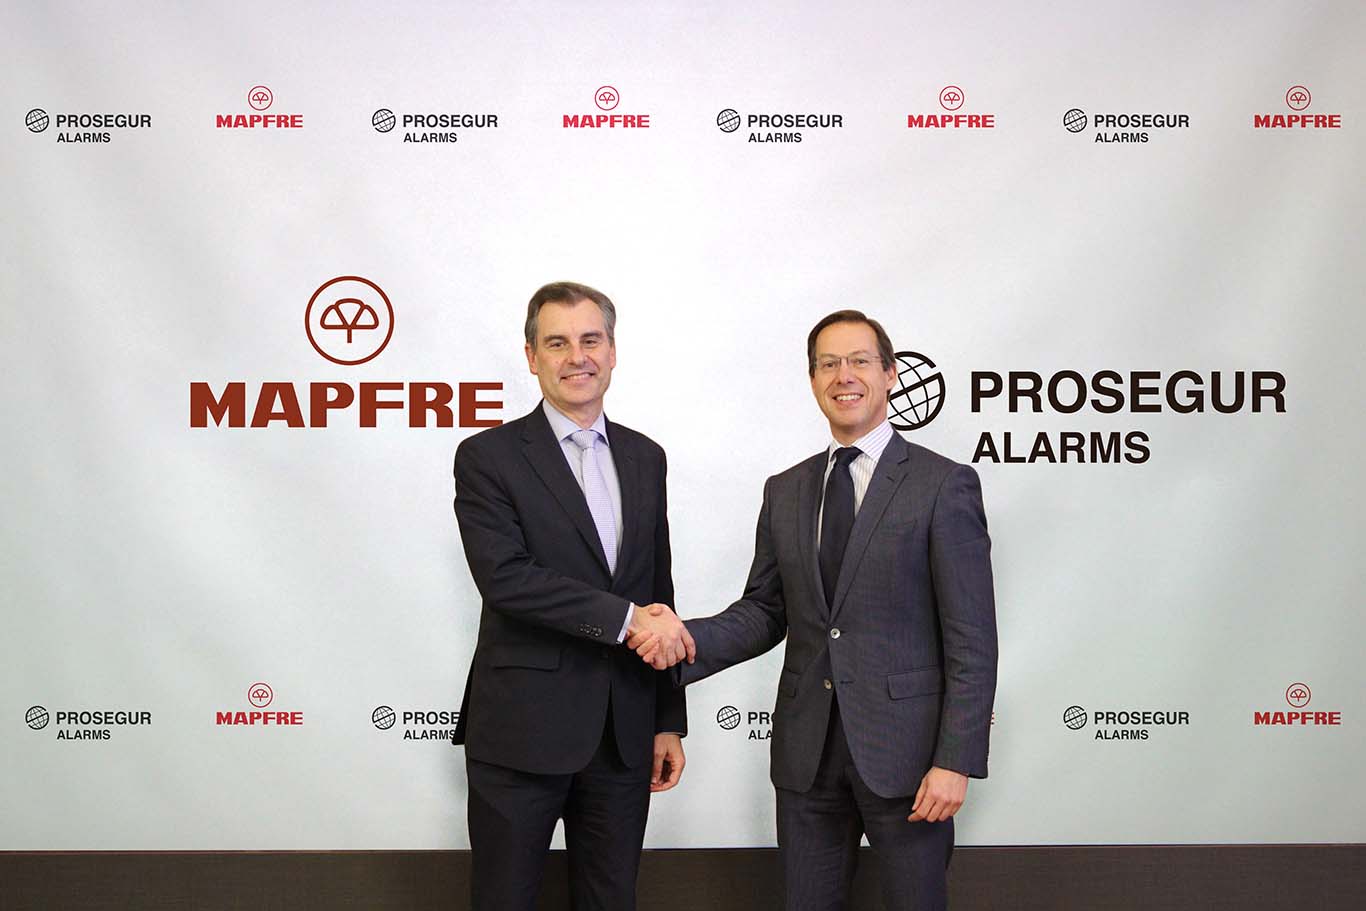 Prosegur Alarms y MAPFRE anuncian alianza